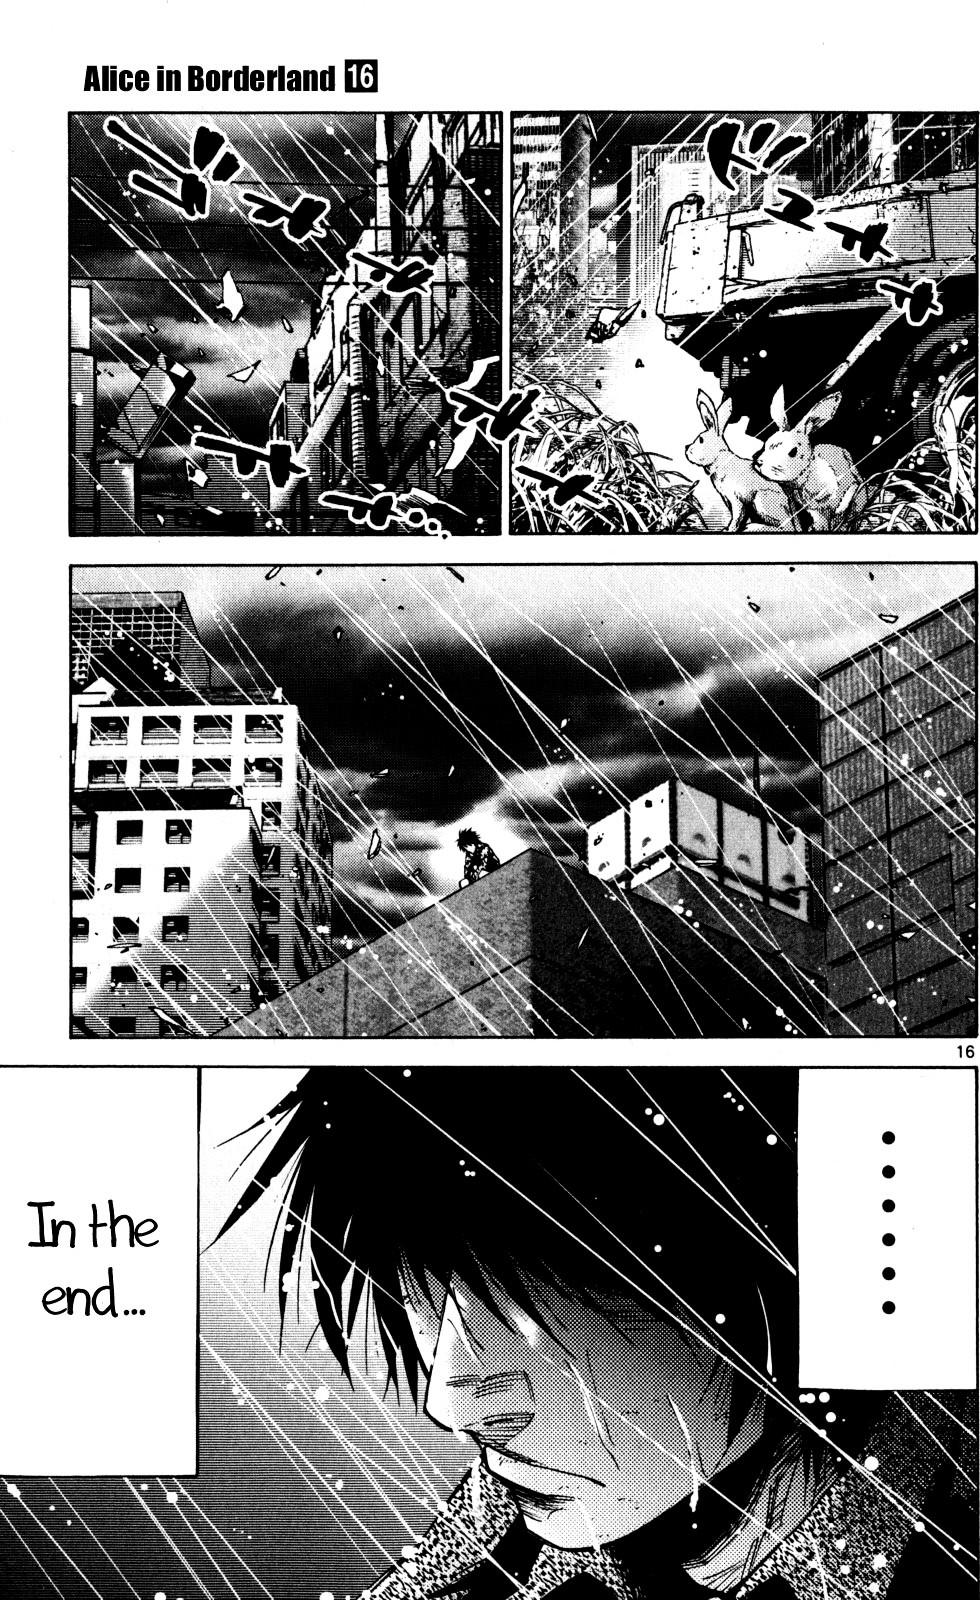 Imawa No Kuni No Alice Vol.16 Chapter 53 : Seventh Day Of Exhibitions (1) page 15 - Mangakakalot